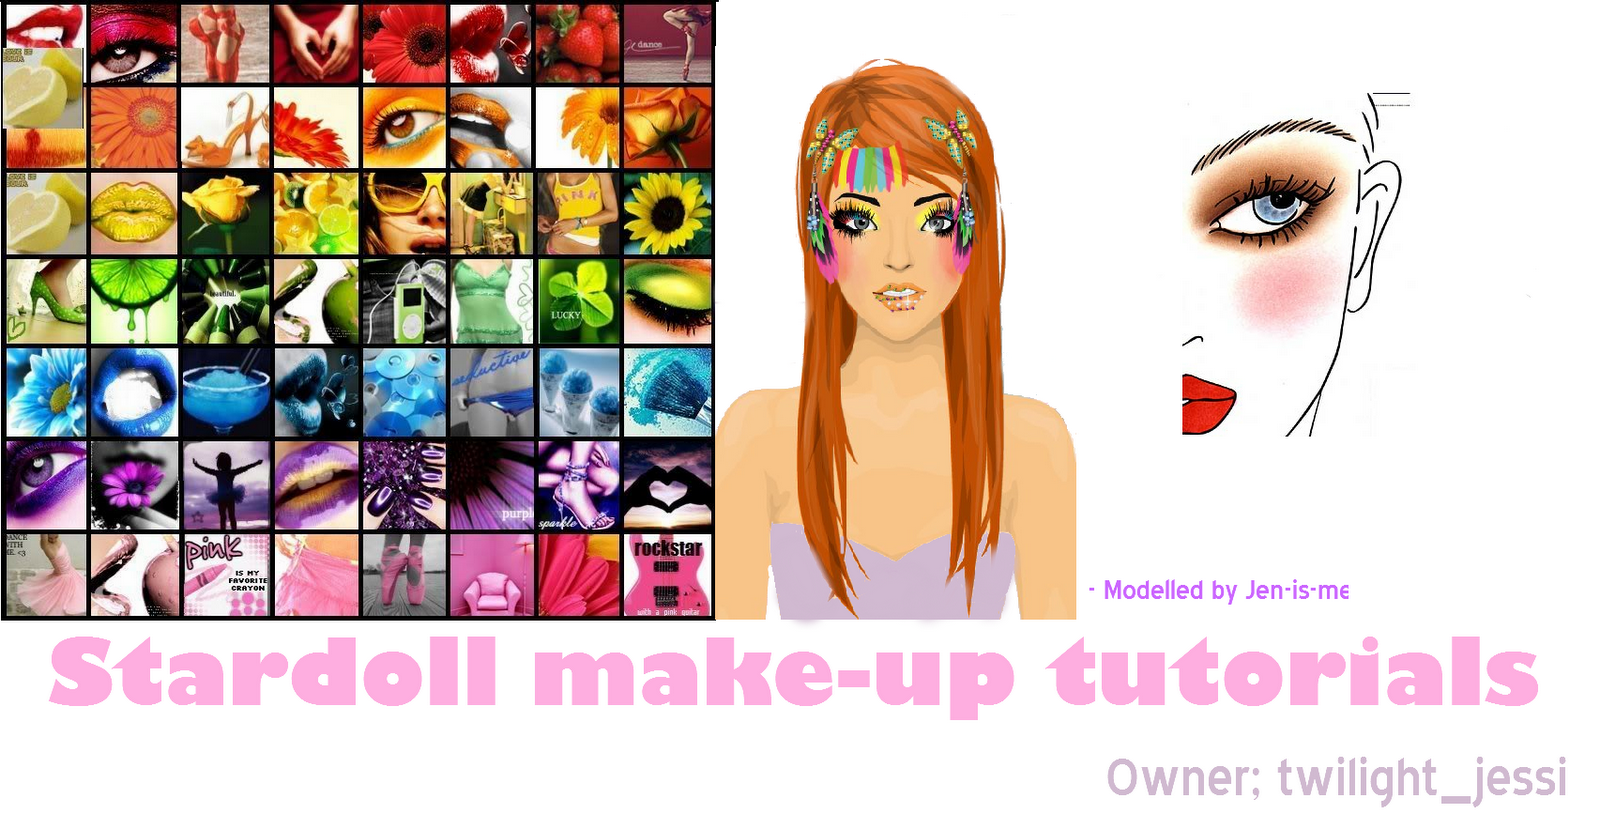 Stardoll make-up tutorials